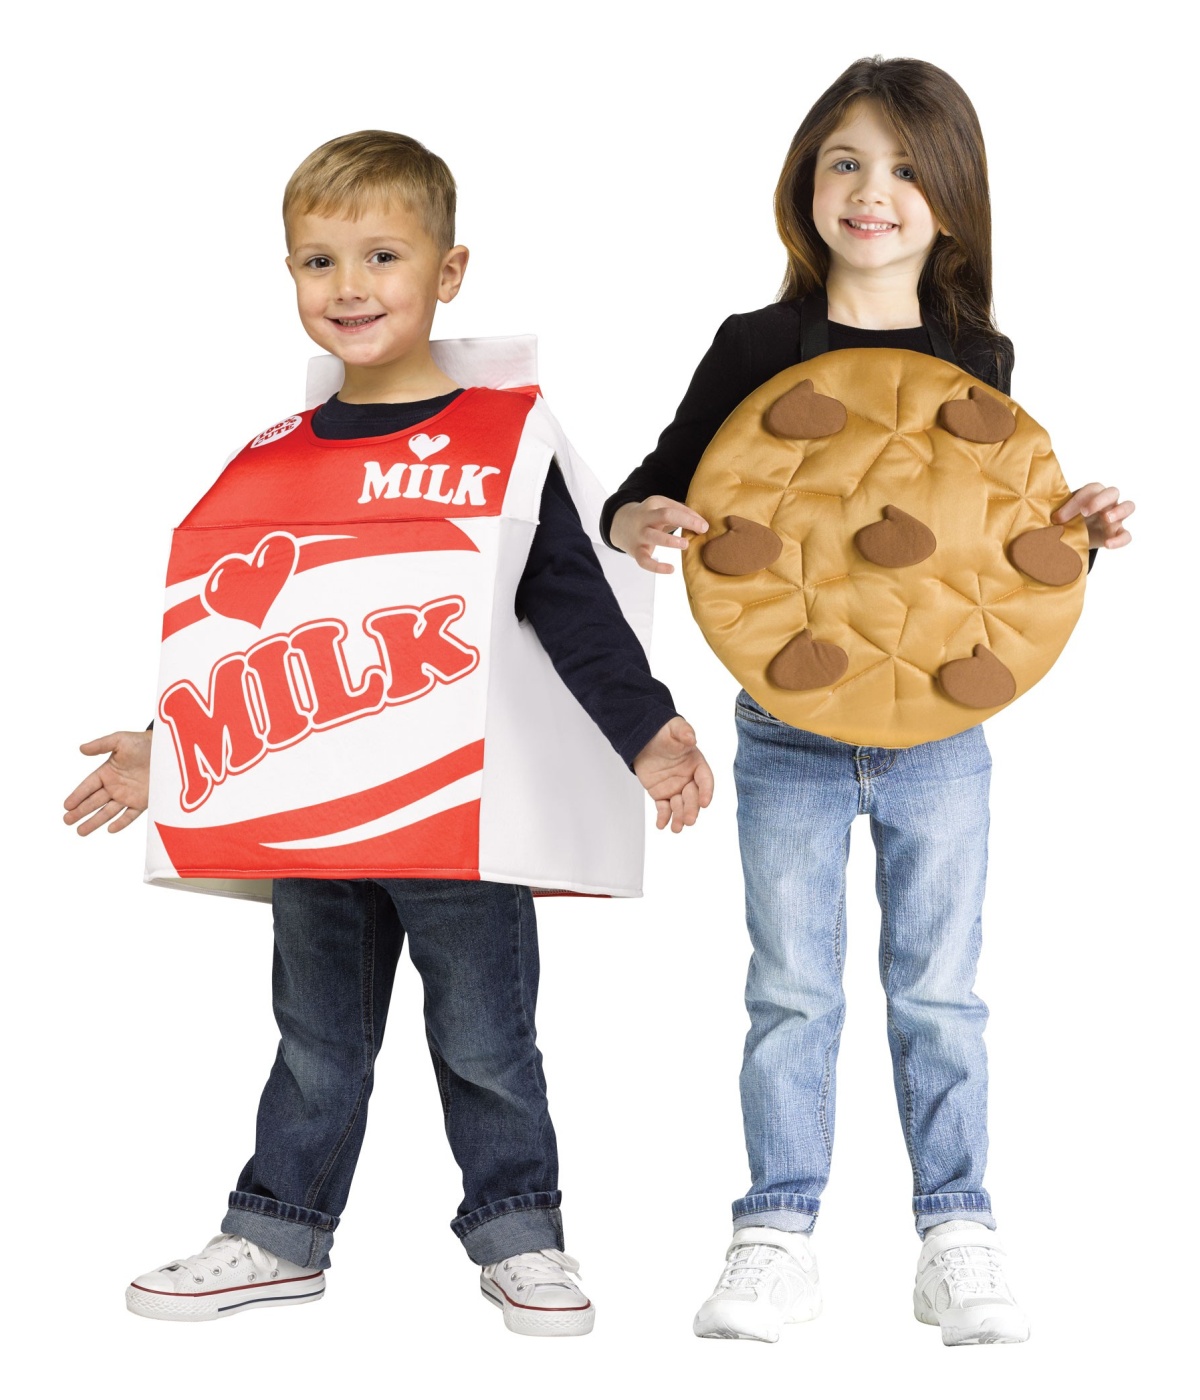  Milk Cookies Baby Costume Set